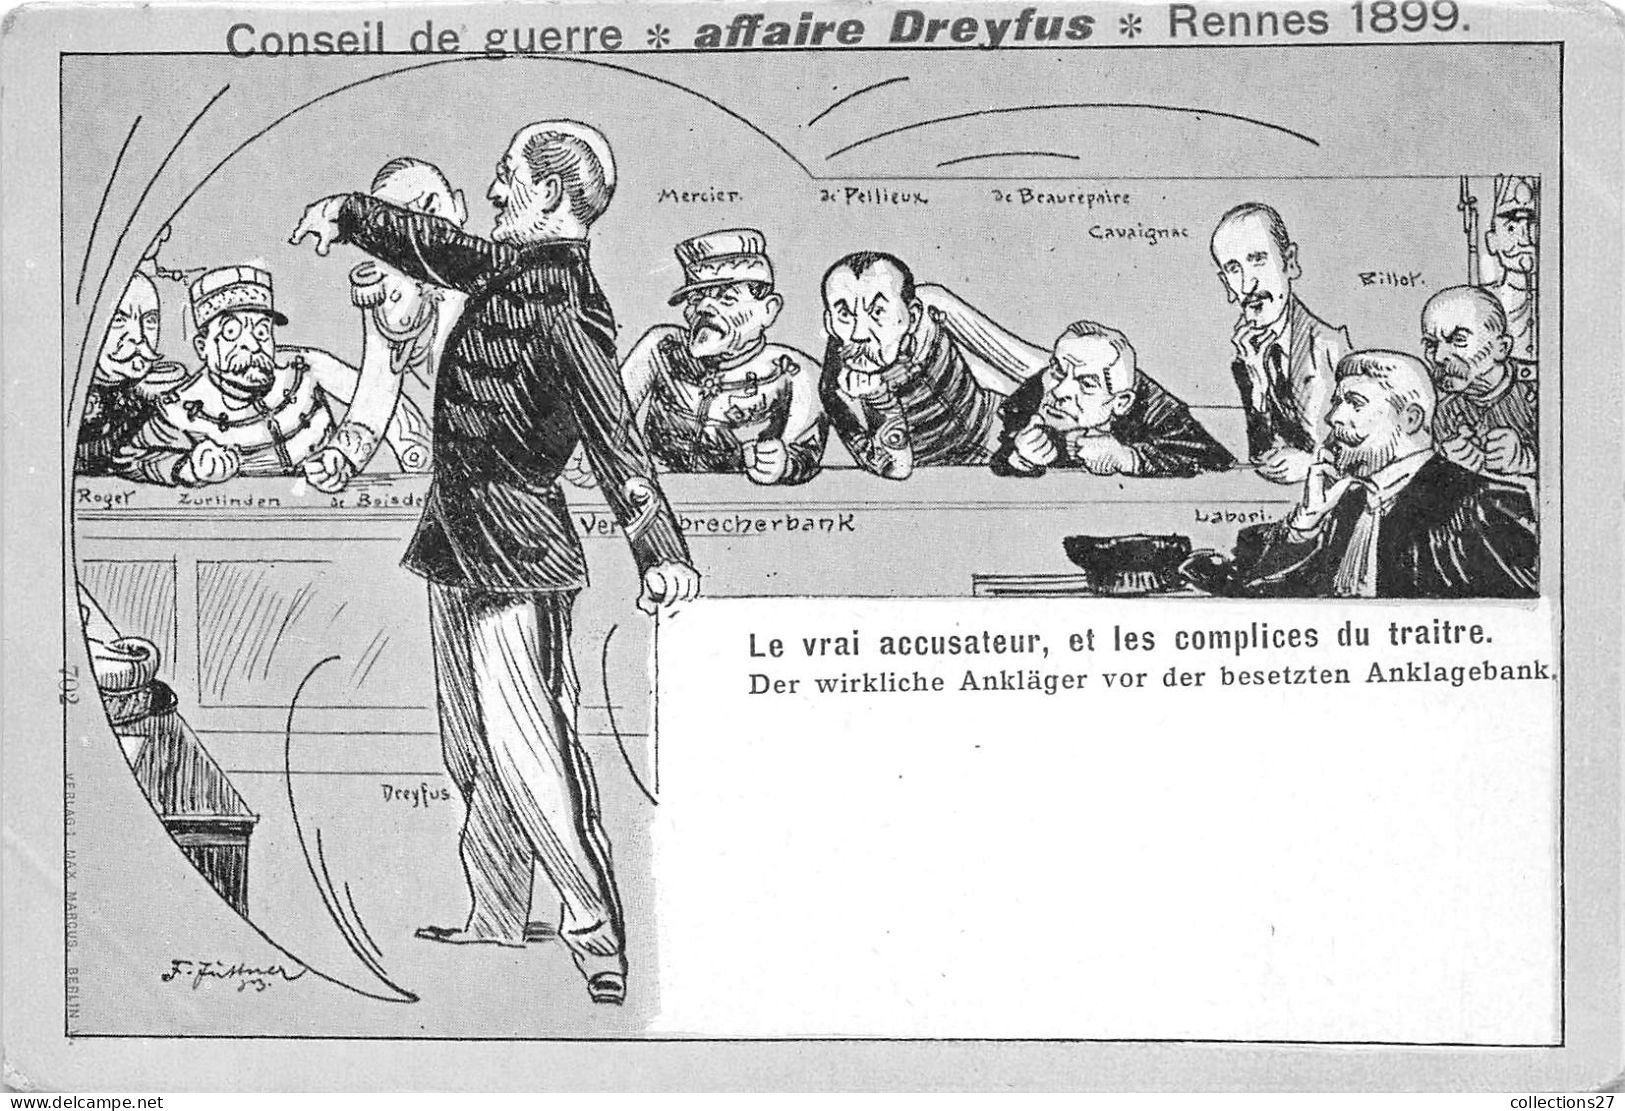 AFFAIRE DREYFUS- CONSEIL DE GUERRE- RENNES 1899 - LE VRAI ACCUSATEUR ET LES COMPLICES DU TRAITRE - People